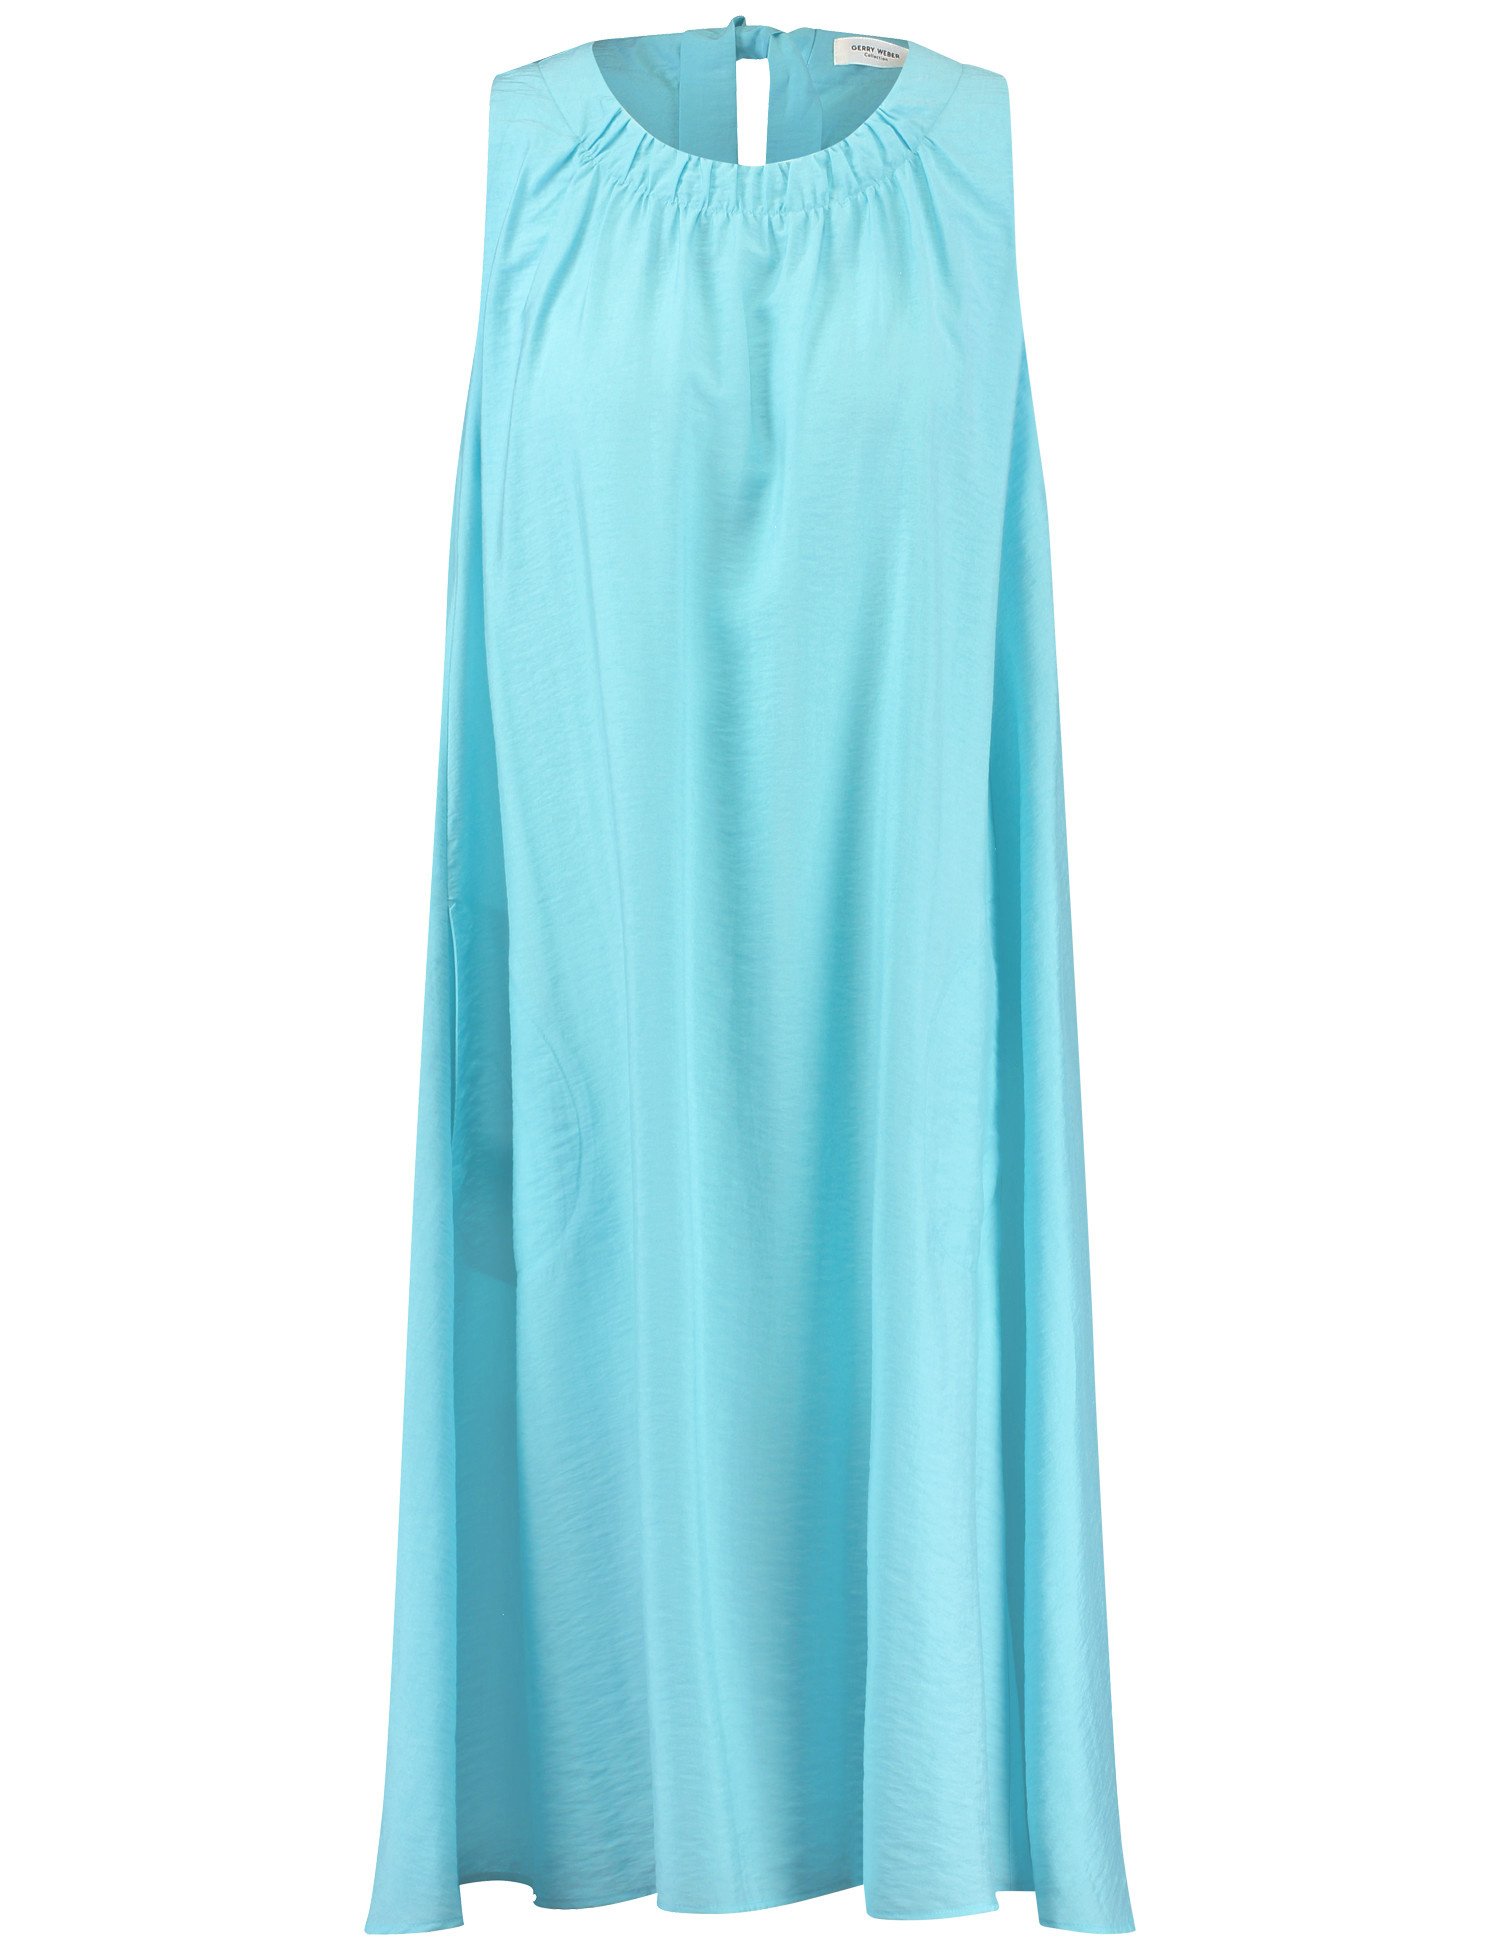 GERRY WEBER Damen Ärmelloses Kleid mit Faltendetail Rundhals Viskose Blau, 42 von Gerry Weber